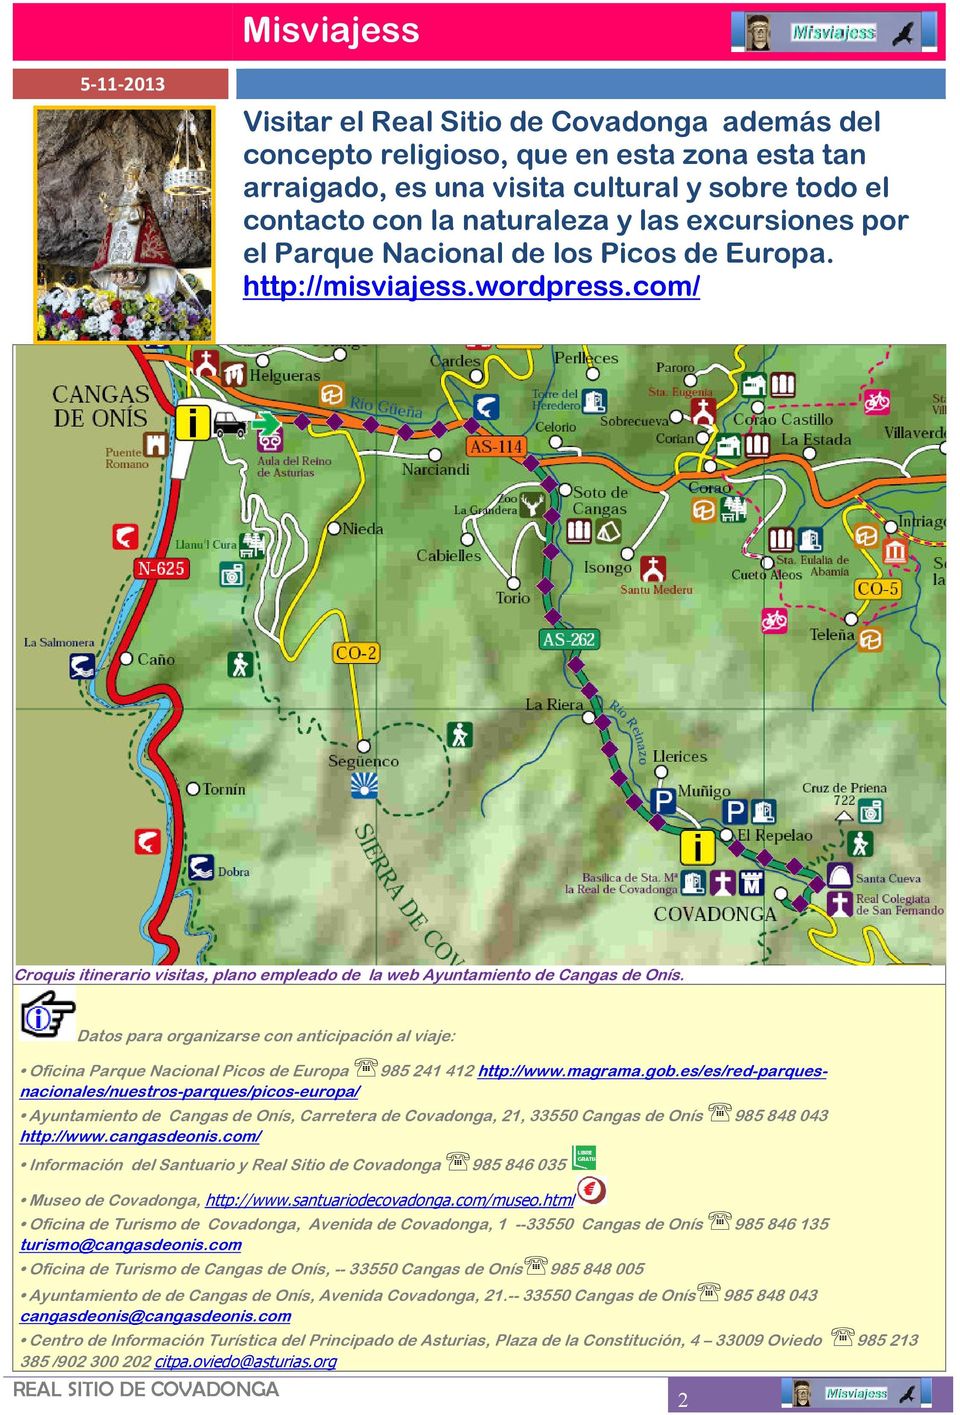 Datos para organizarse con anticipación al viaje: Oficina Parque Nacional Picos de Europa 985 241 412 http://www.magrama.gob.